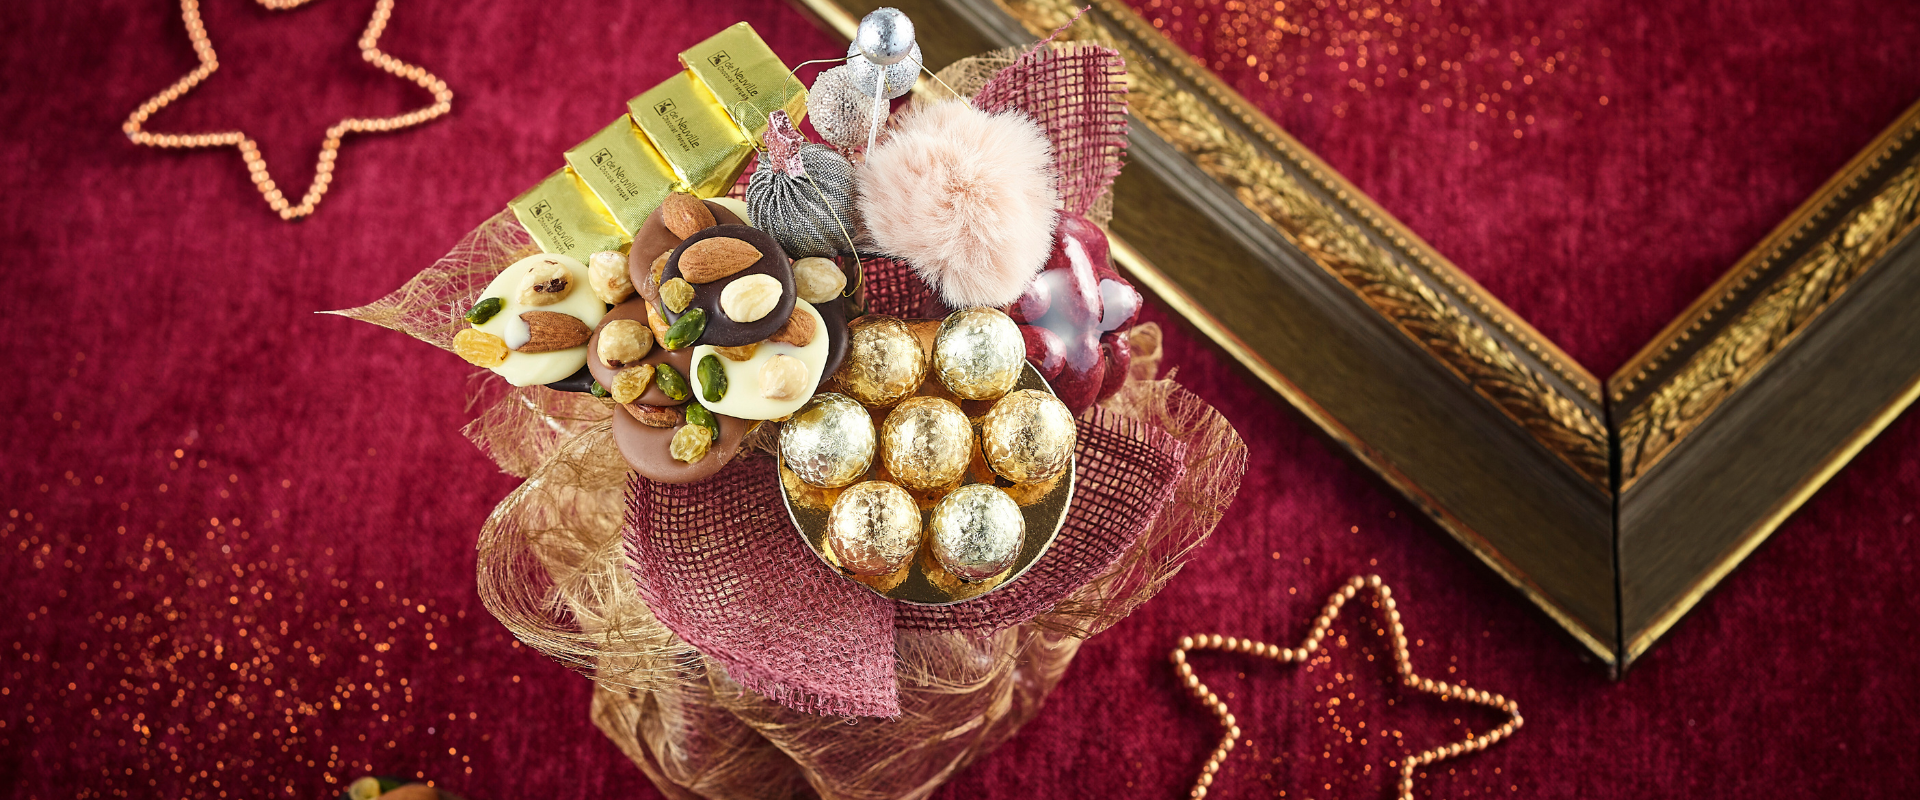 Harmonie, cadeau chocolat de Noël à expédier partout en France 